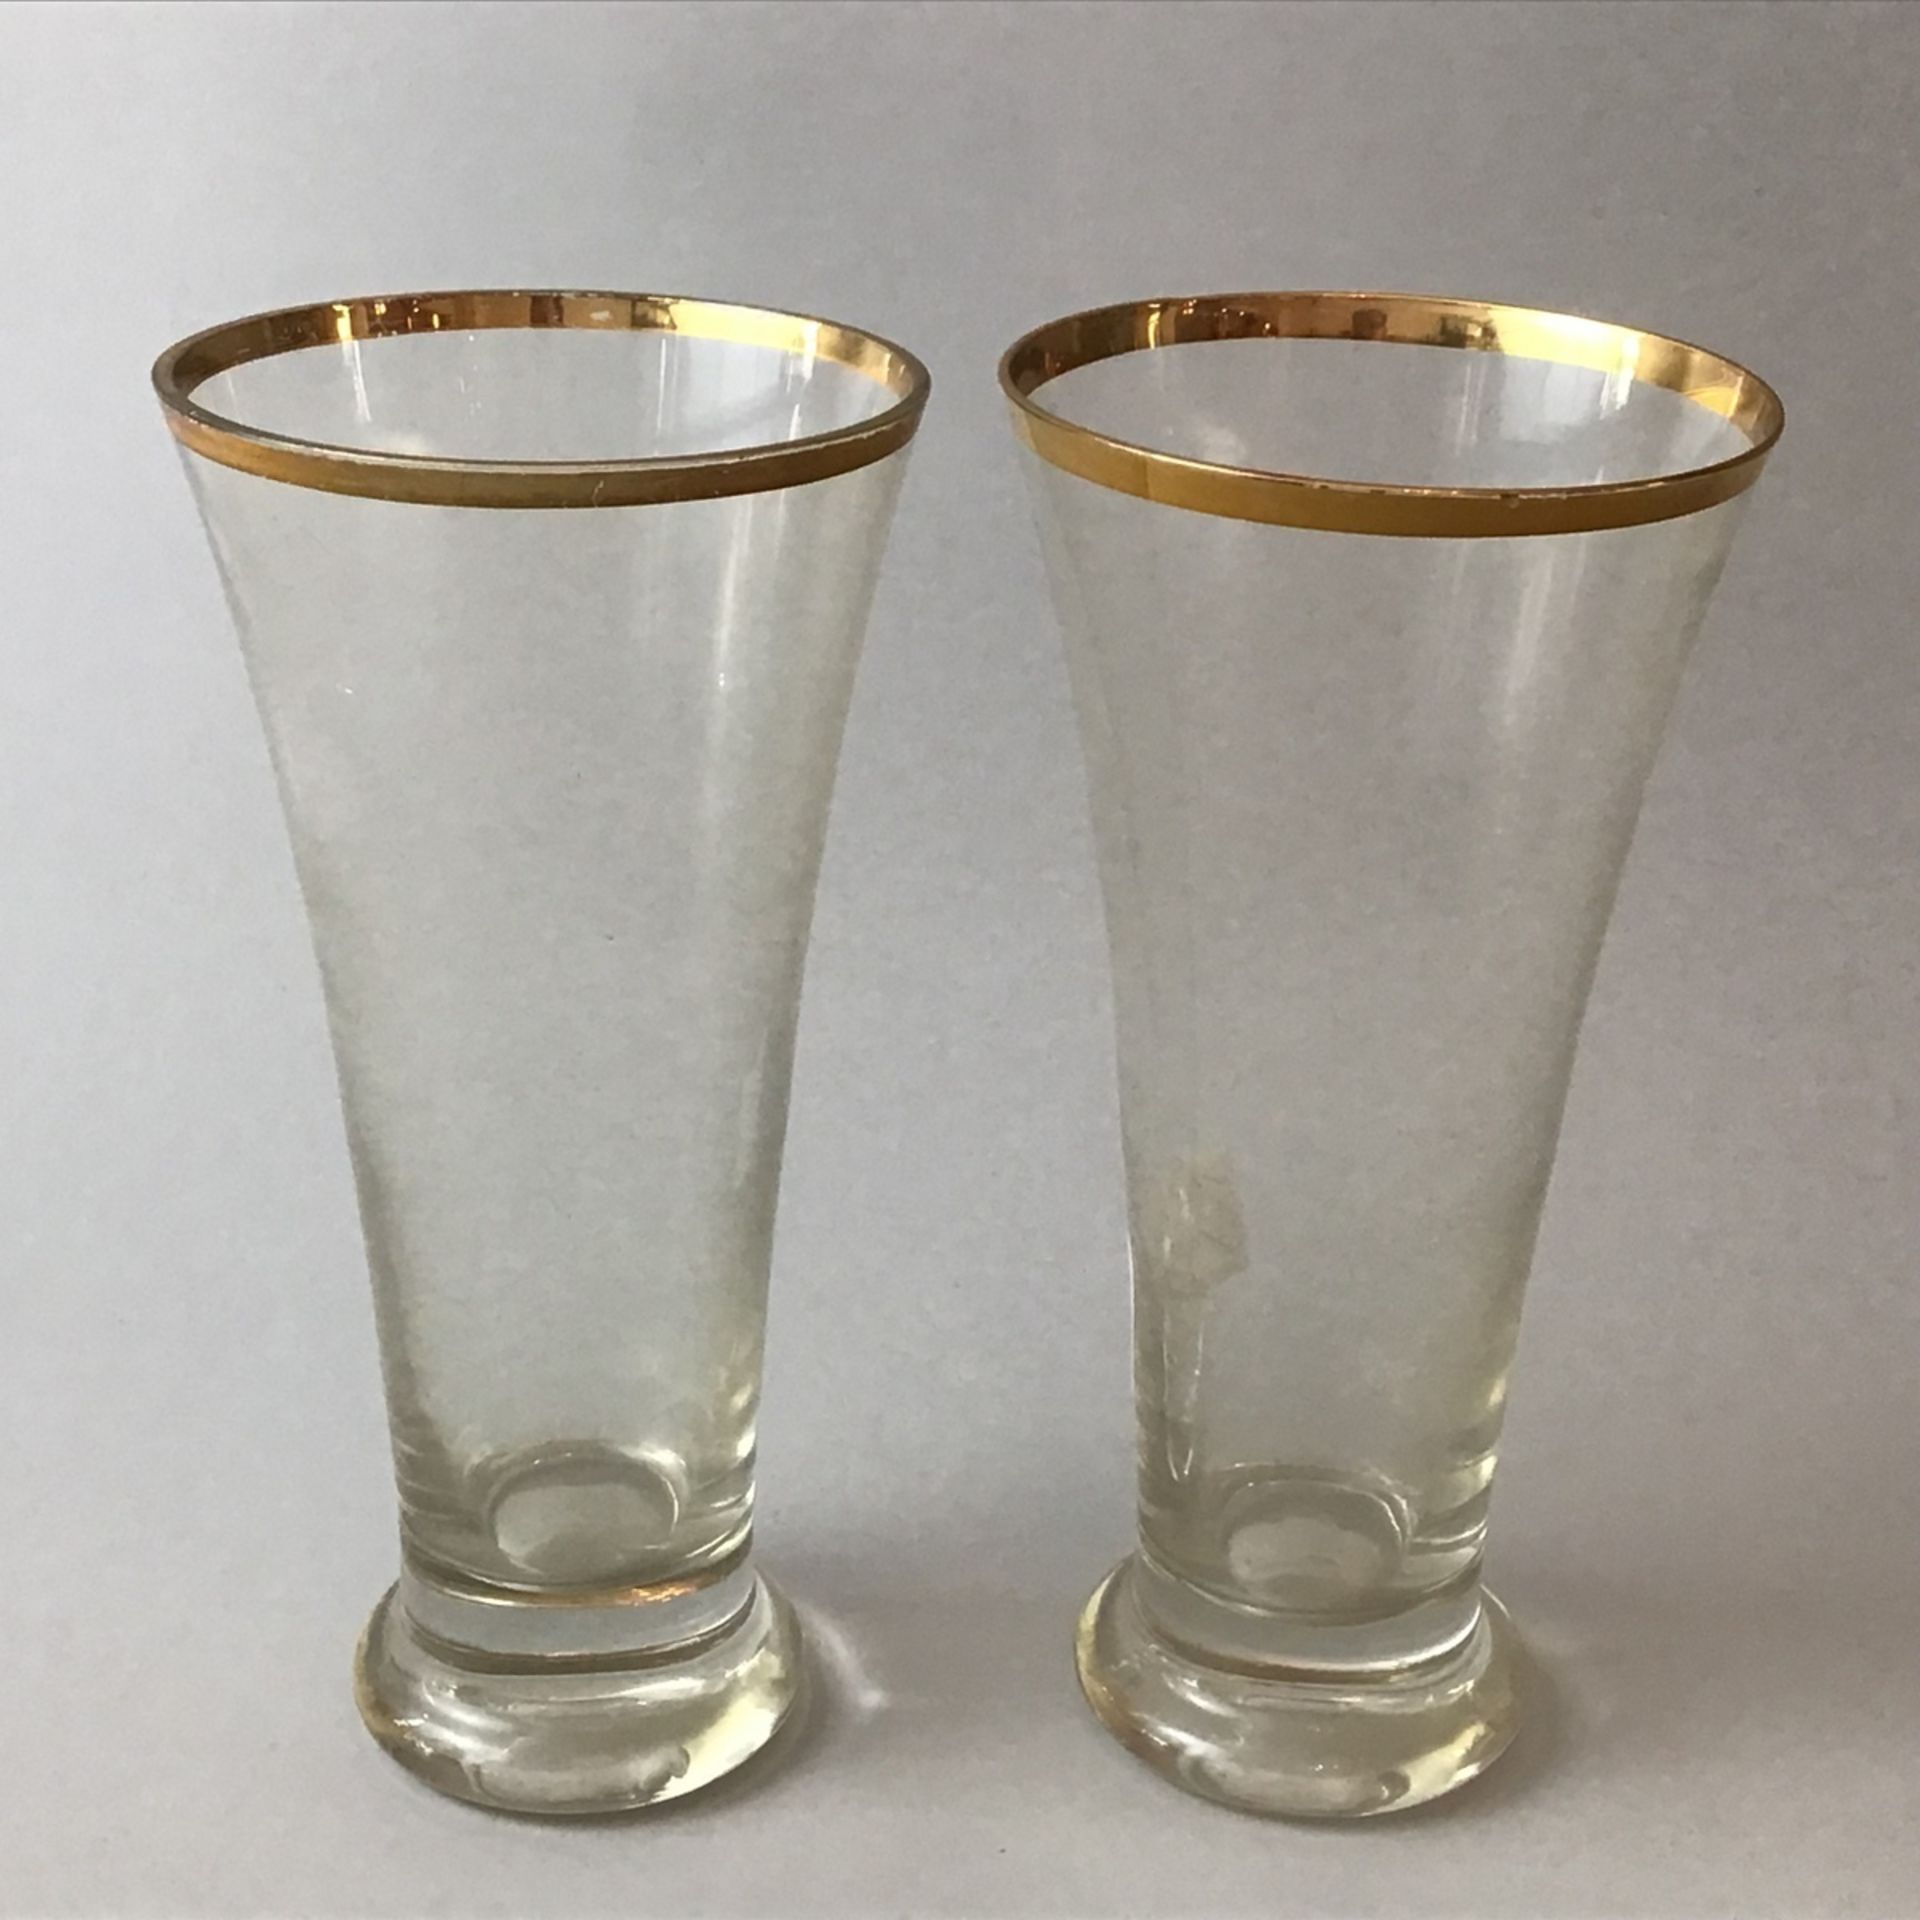 Paar Bier-Zylindergläser, um 1900, farbloses Glas mit Goldrand (leicht berieben), geeicht 10/20L,